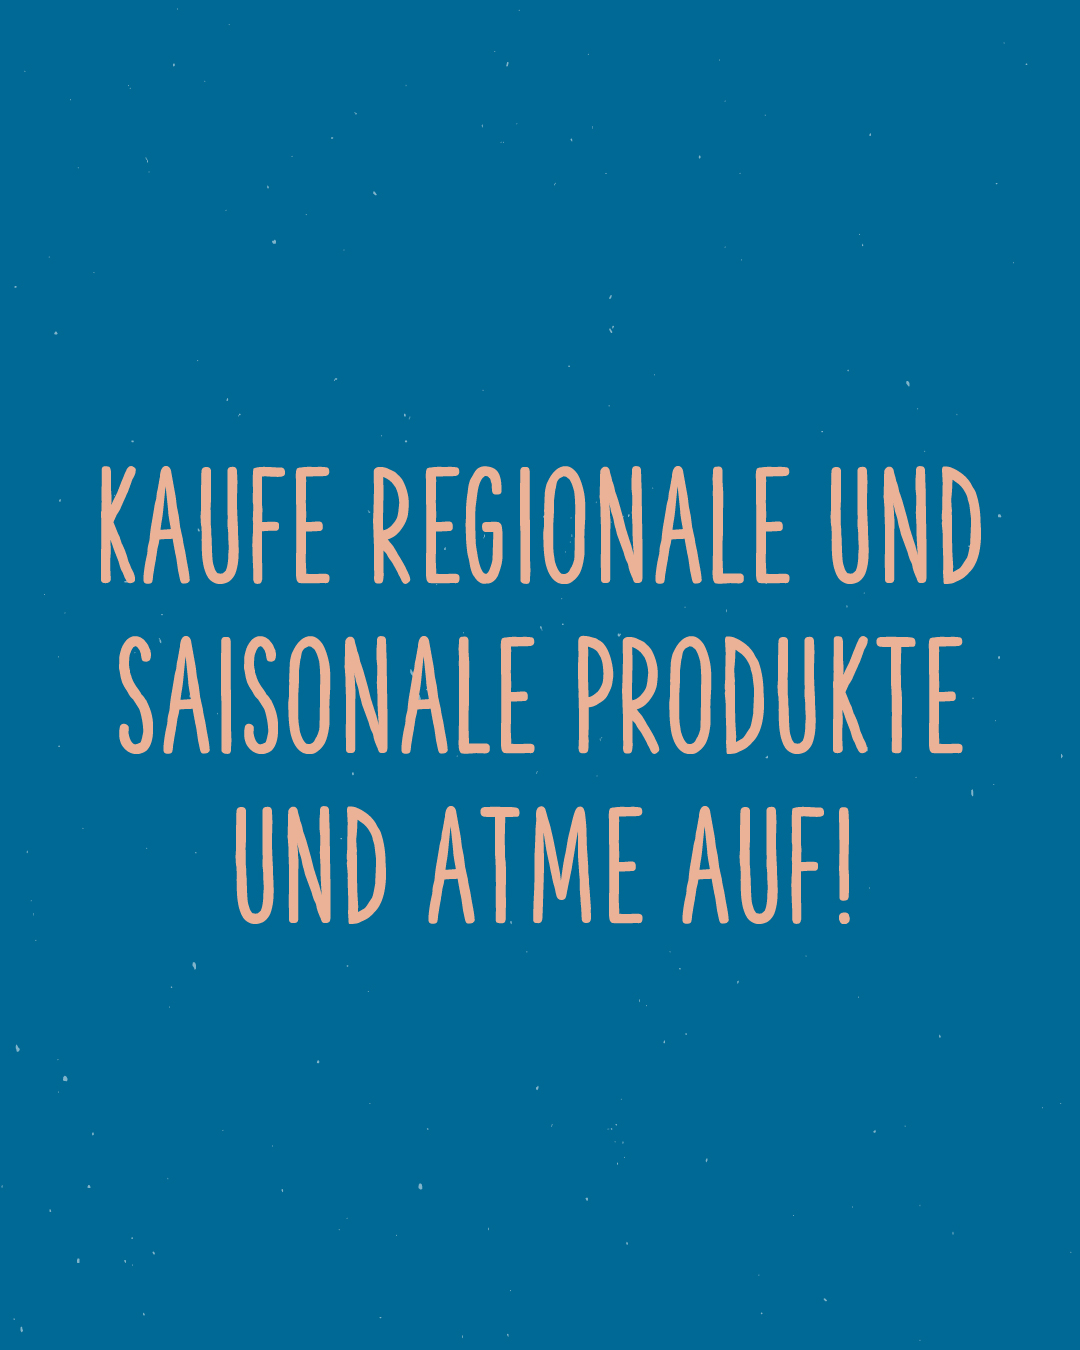 Rosa auf blauen Hintergrund: Kaufe regionale und saisonale Produkte und atme auf!